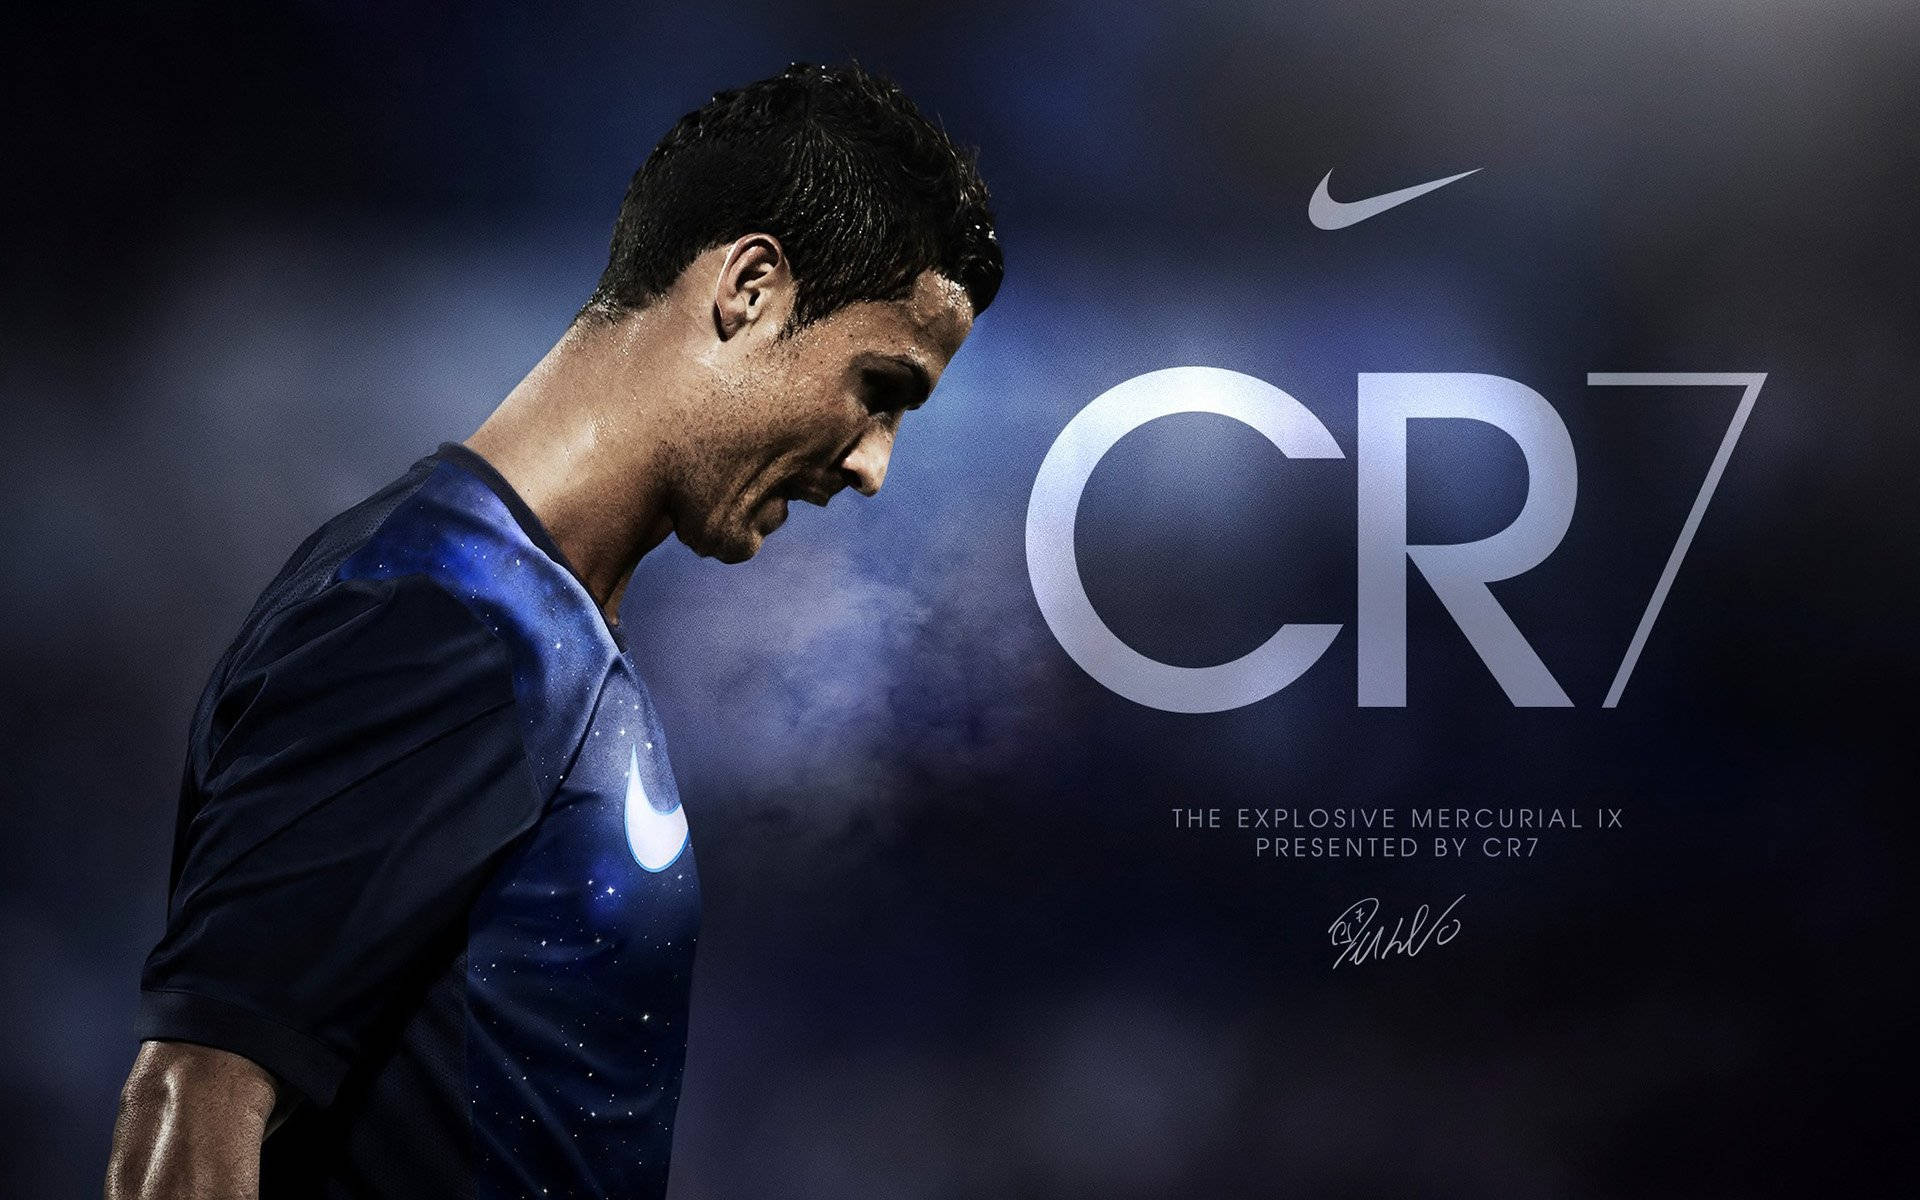 Cristiano Ronaldo Portugal Wallpaper